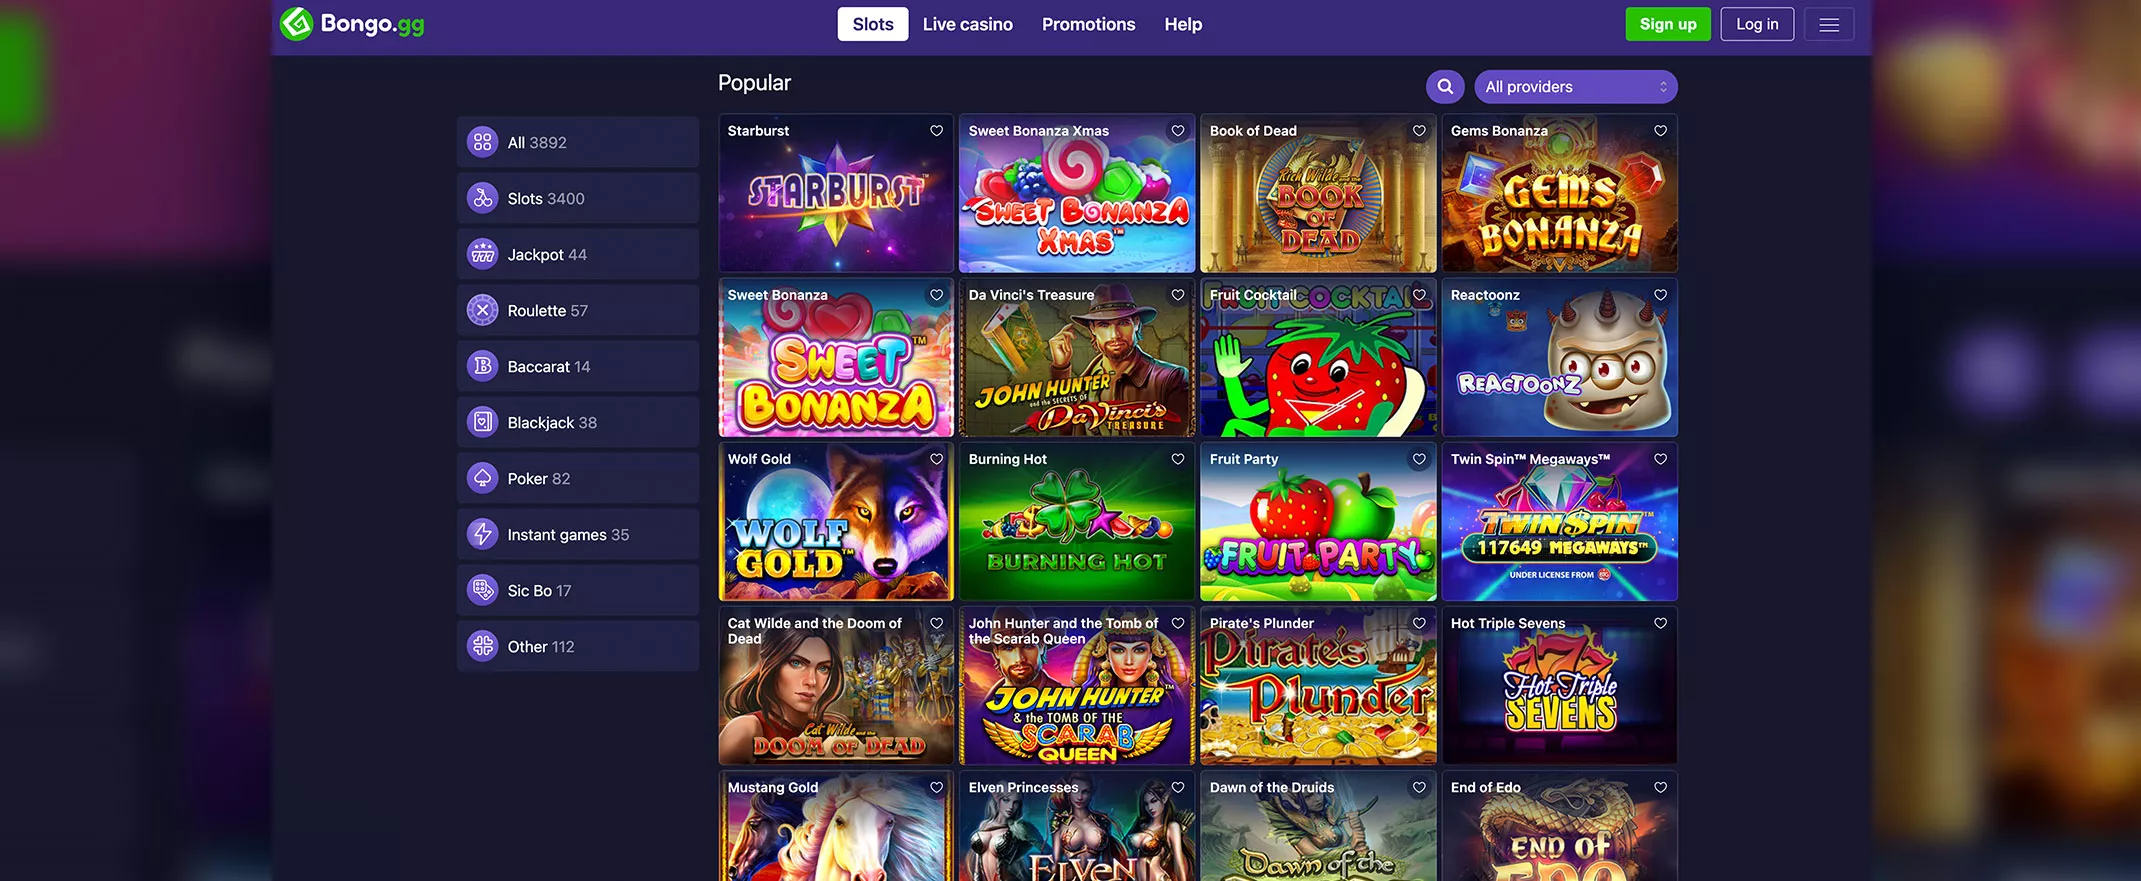 Bongo Casino screenshot of the games